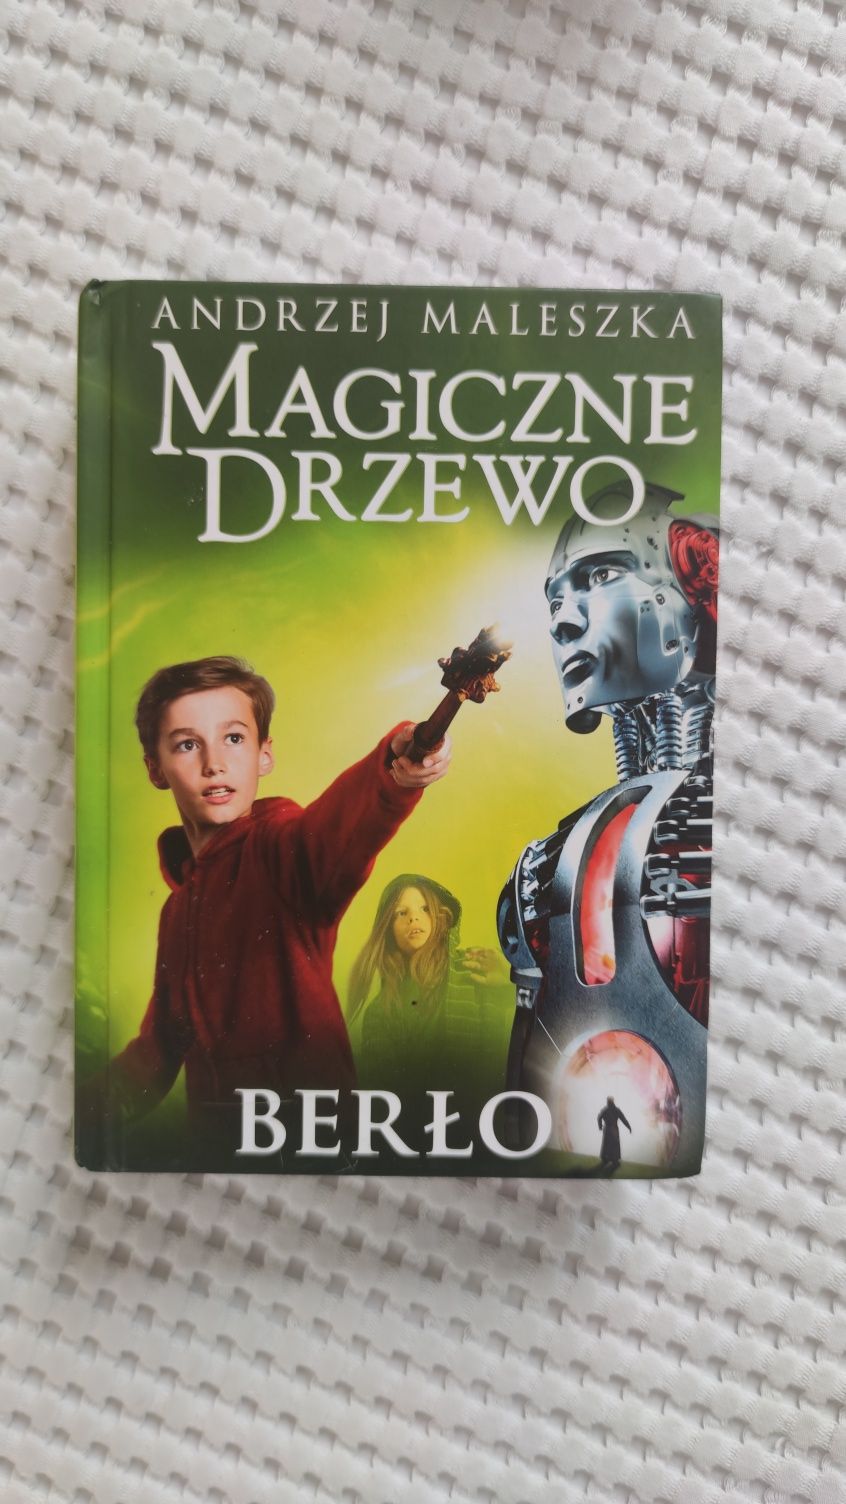 Magiczne drzewo - Berło Andrzej Maleszka